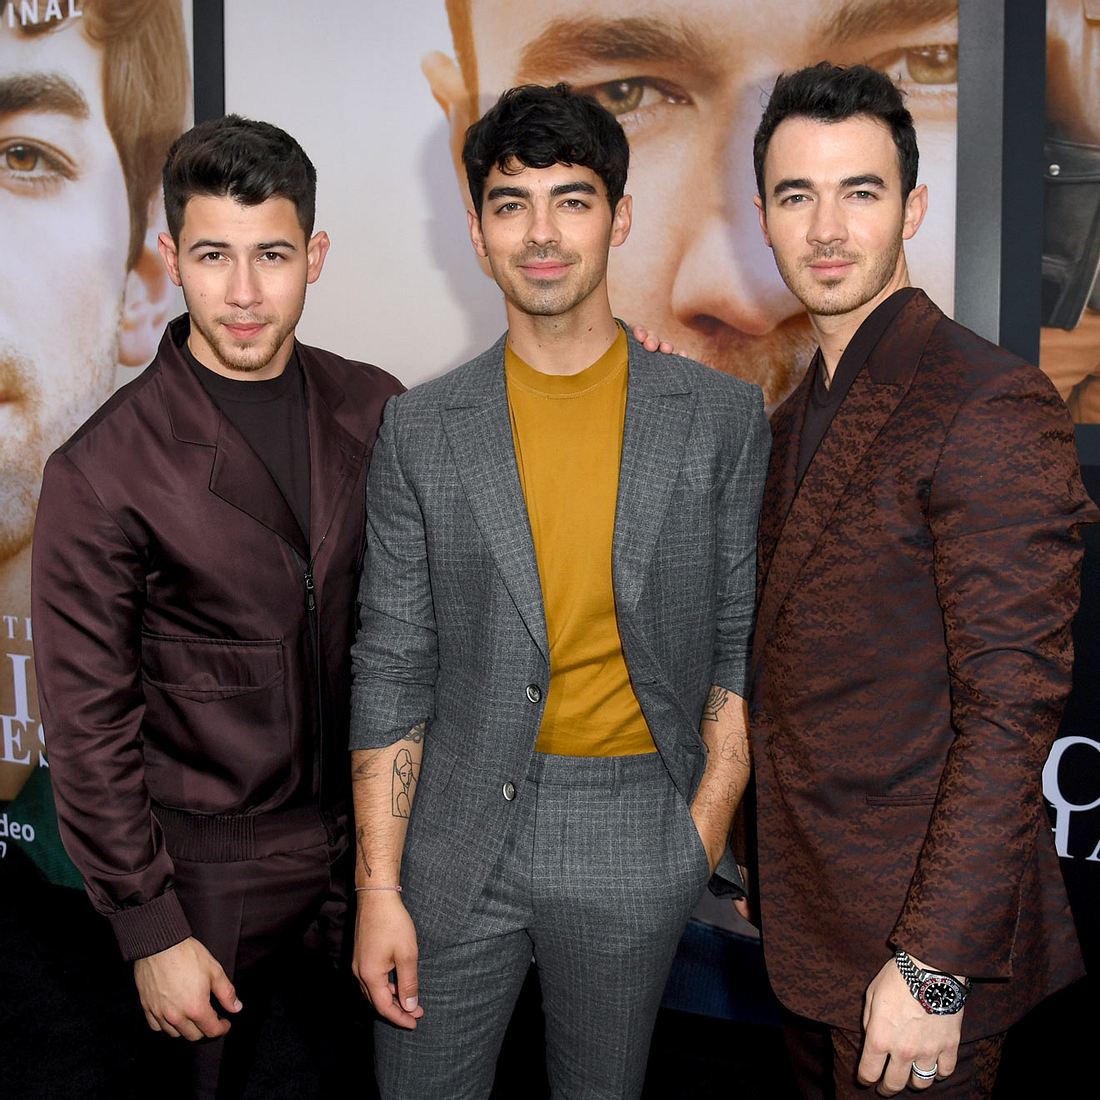 Erfahre hier den wahren Grund für die Jonas Brothers Trennung 2013 ...